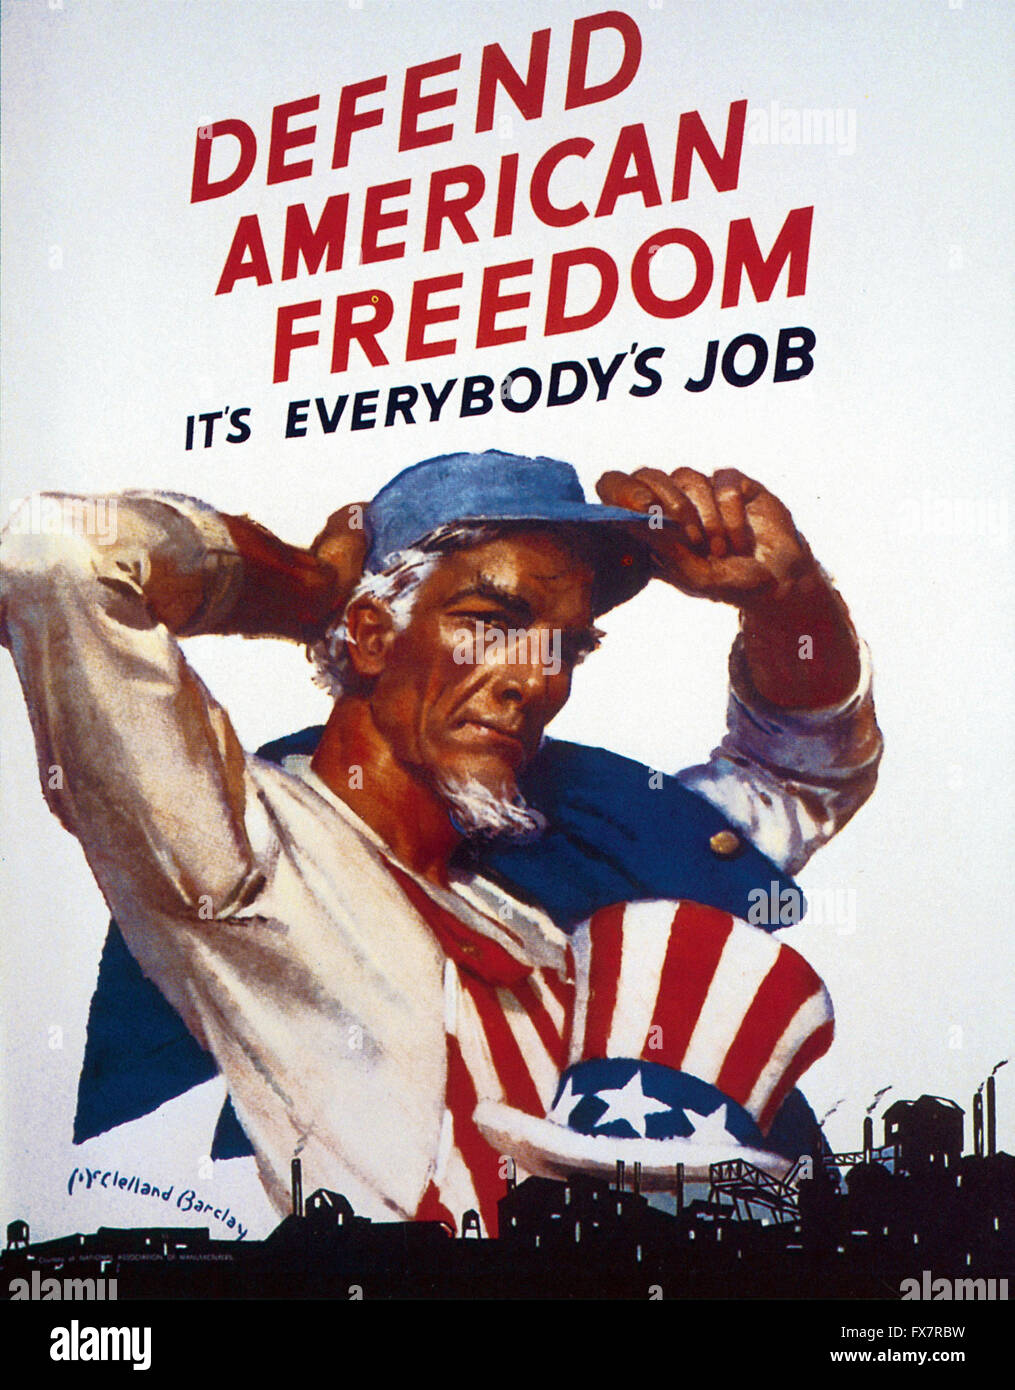 Defender la libertad estadounidense - el Tío Sam - Segunda Guerra Mundial - cartel propagandístico en EE.UU. Foto de stock